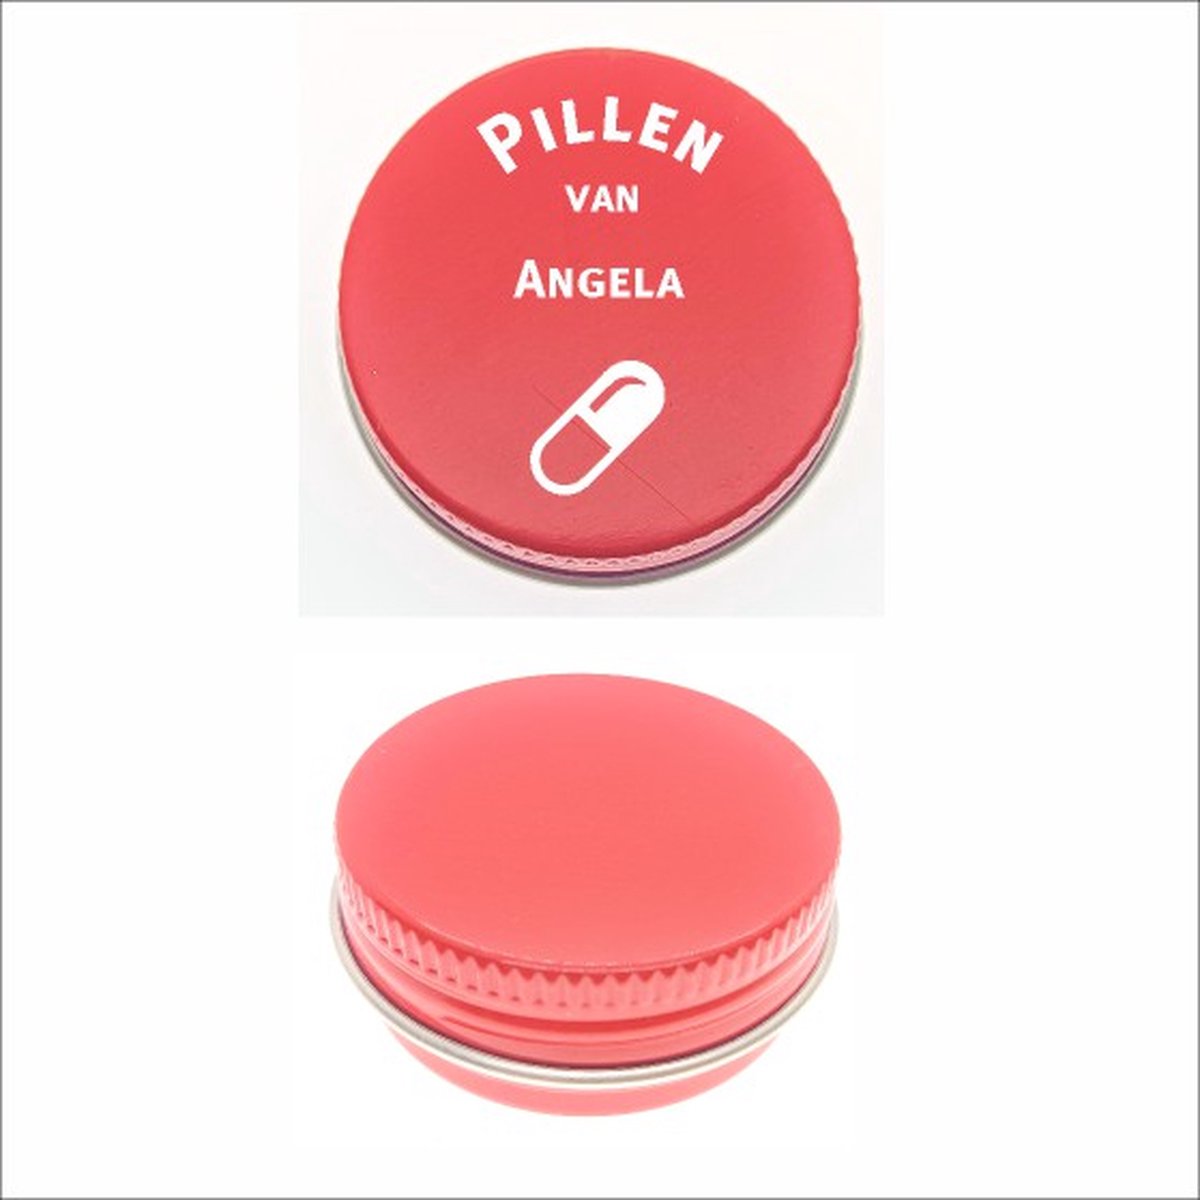 Pillen Blikje Met Naam Gravering - Angela